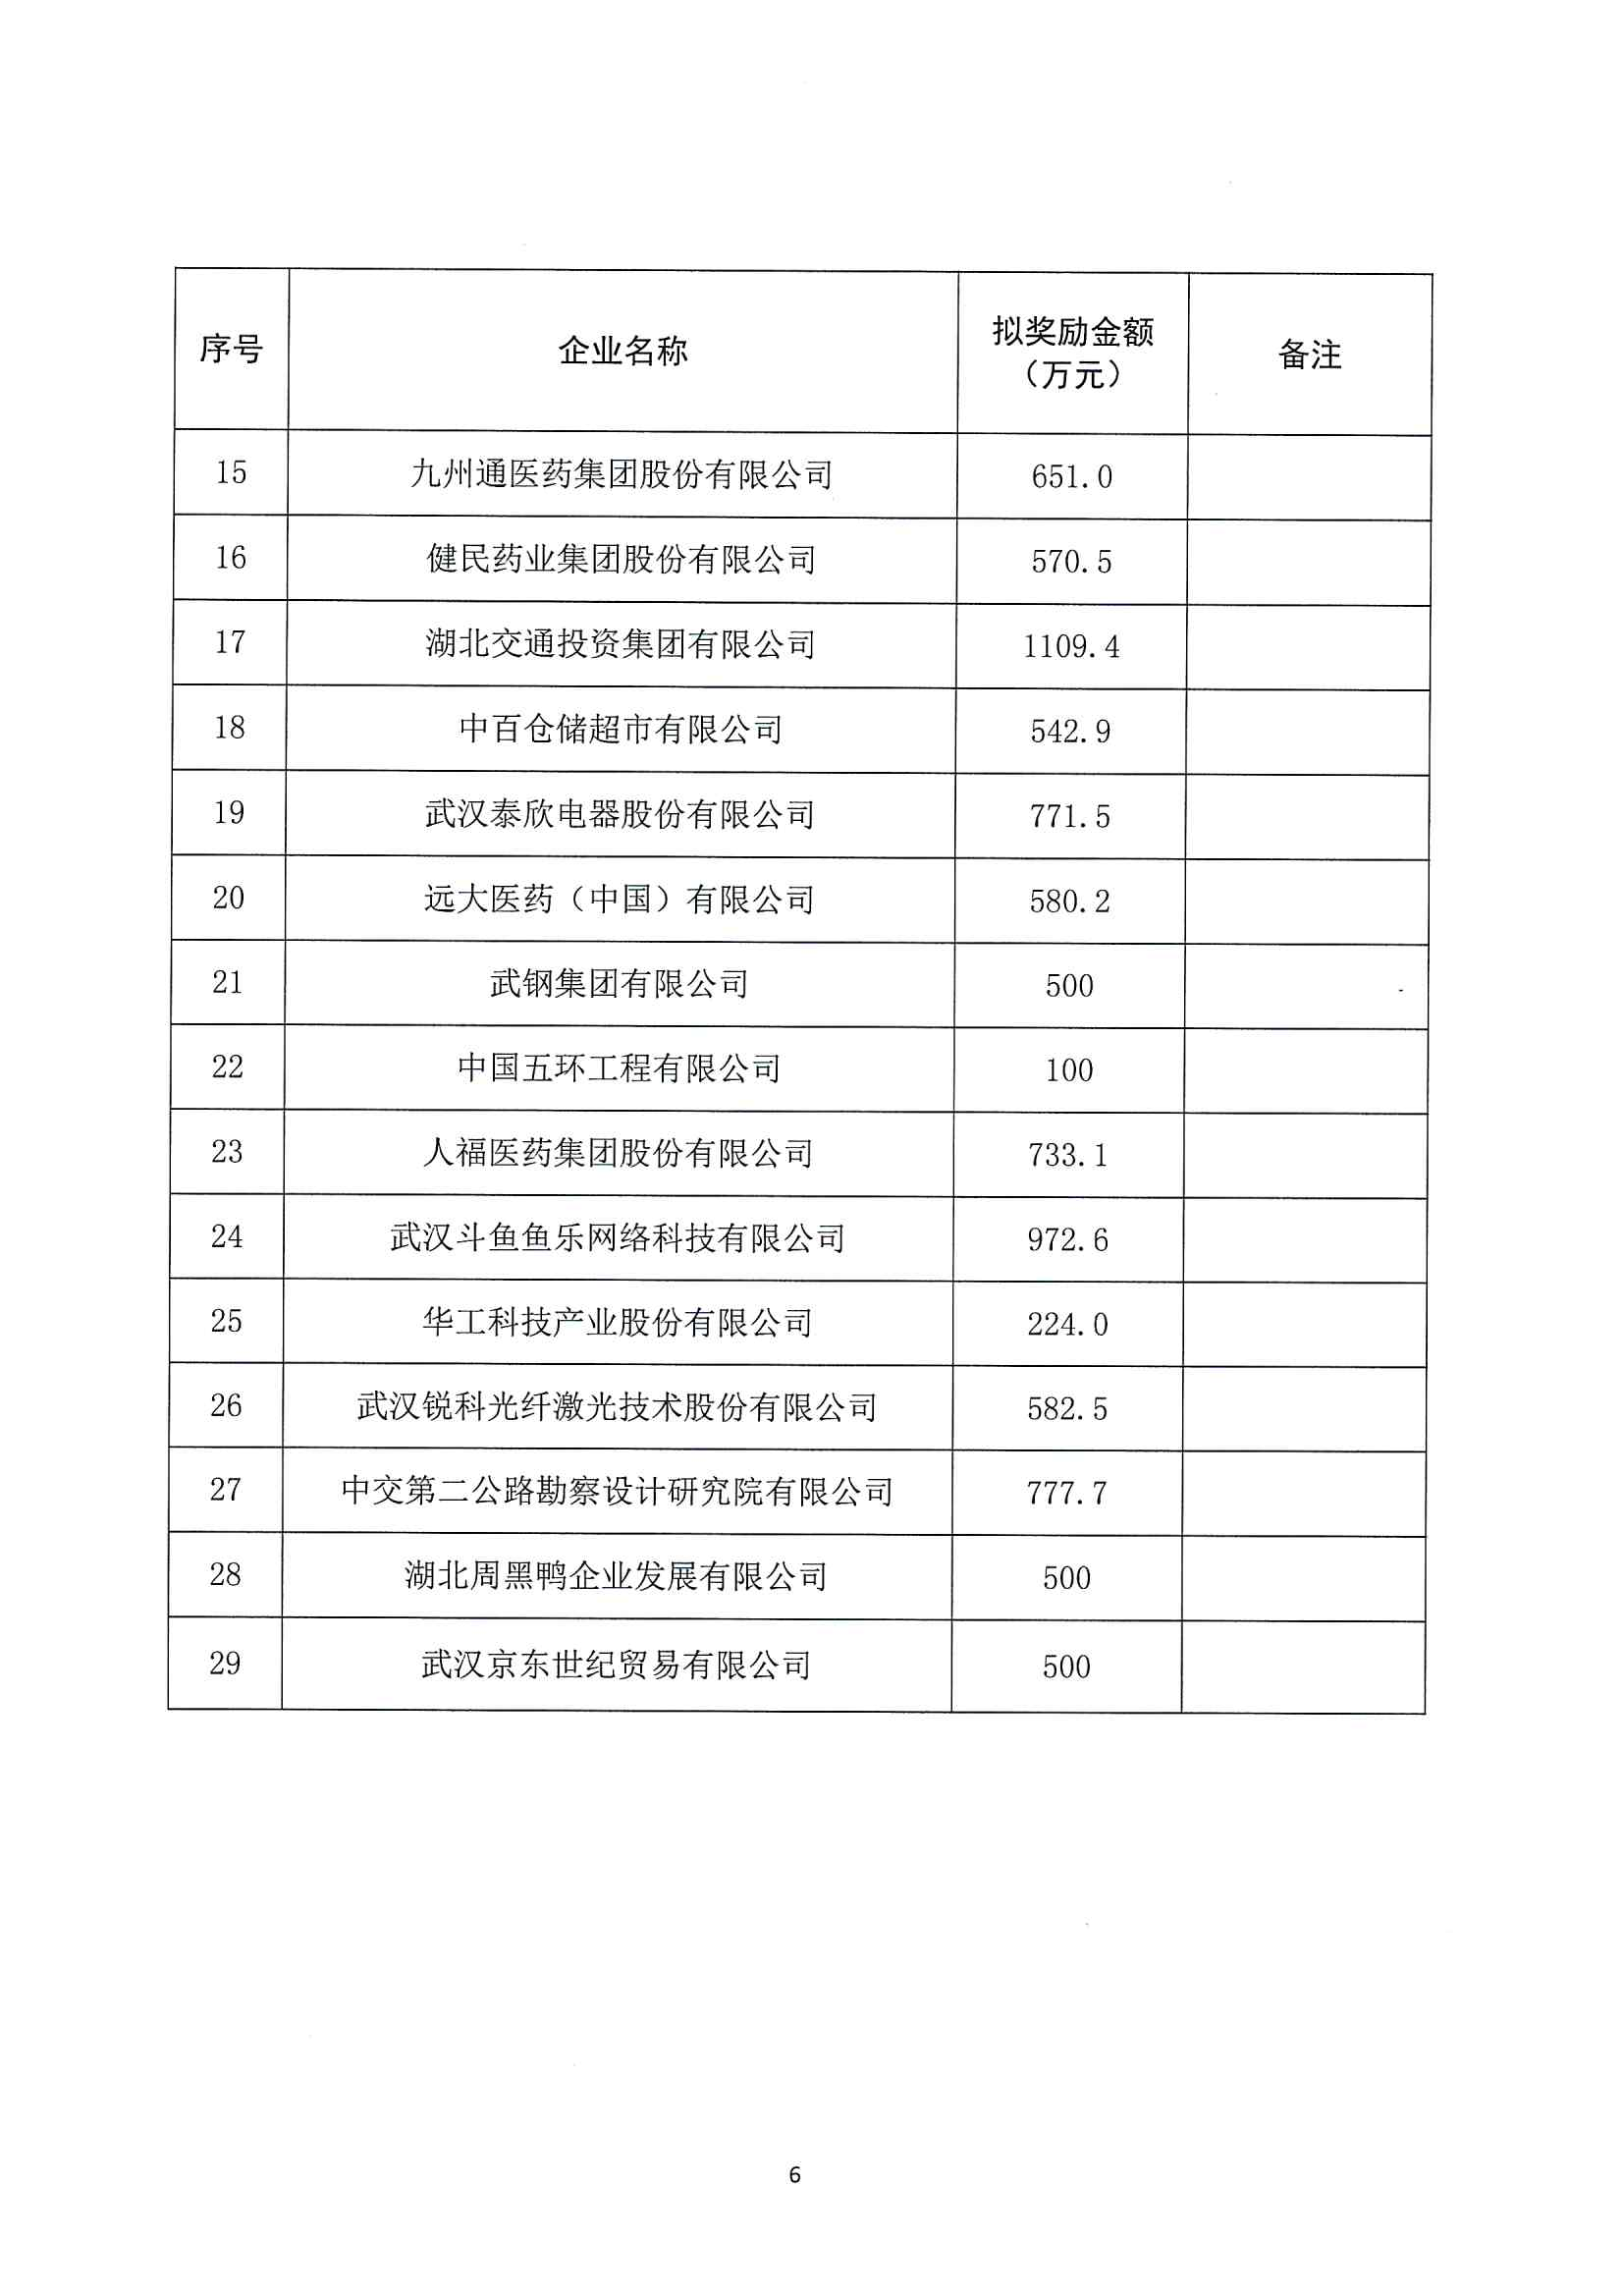 市发改委关于2022年度武汉总部企业政策兑现名单的公示通知